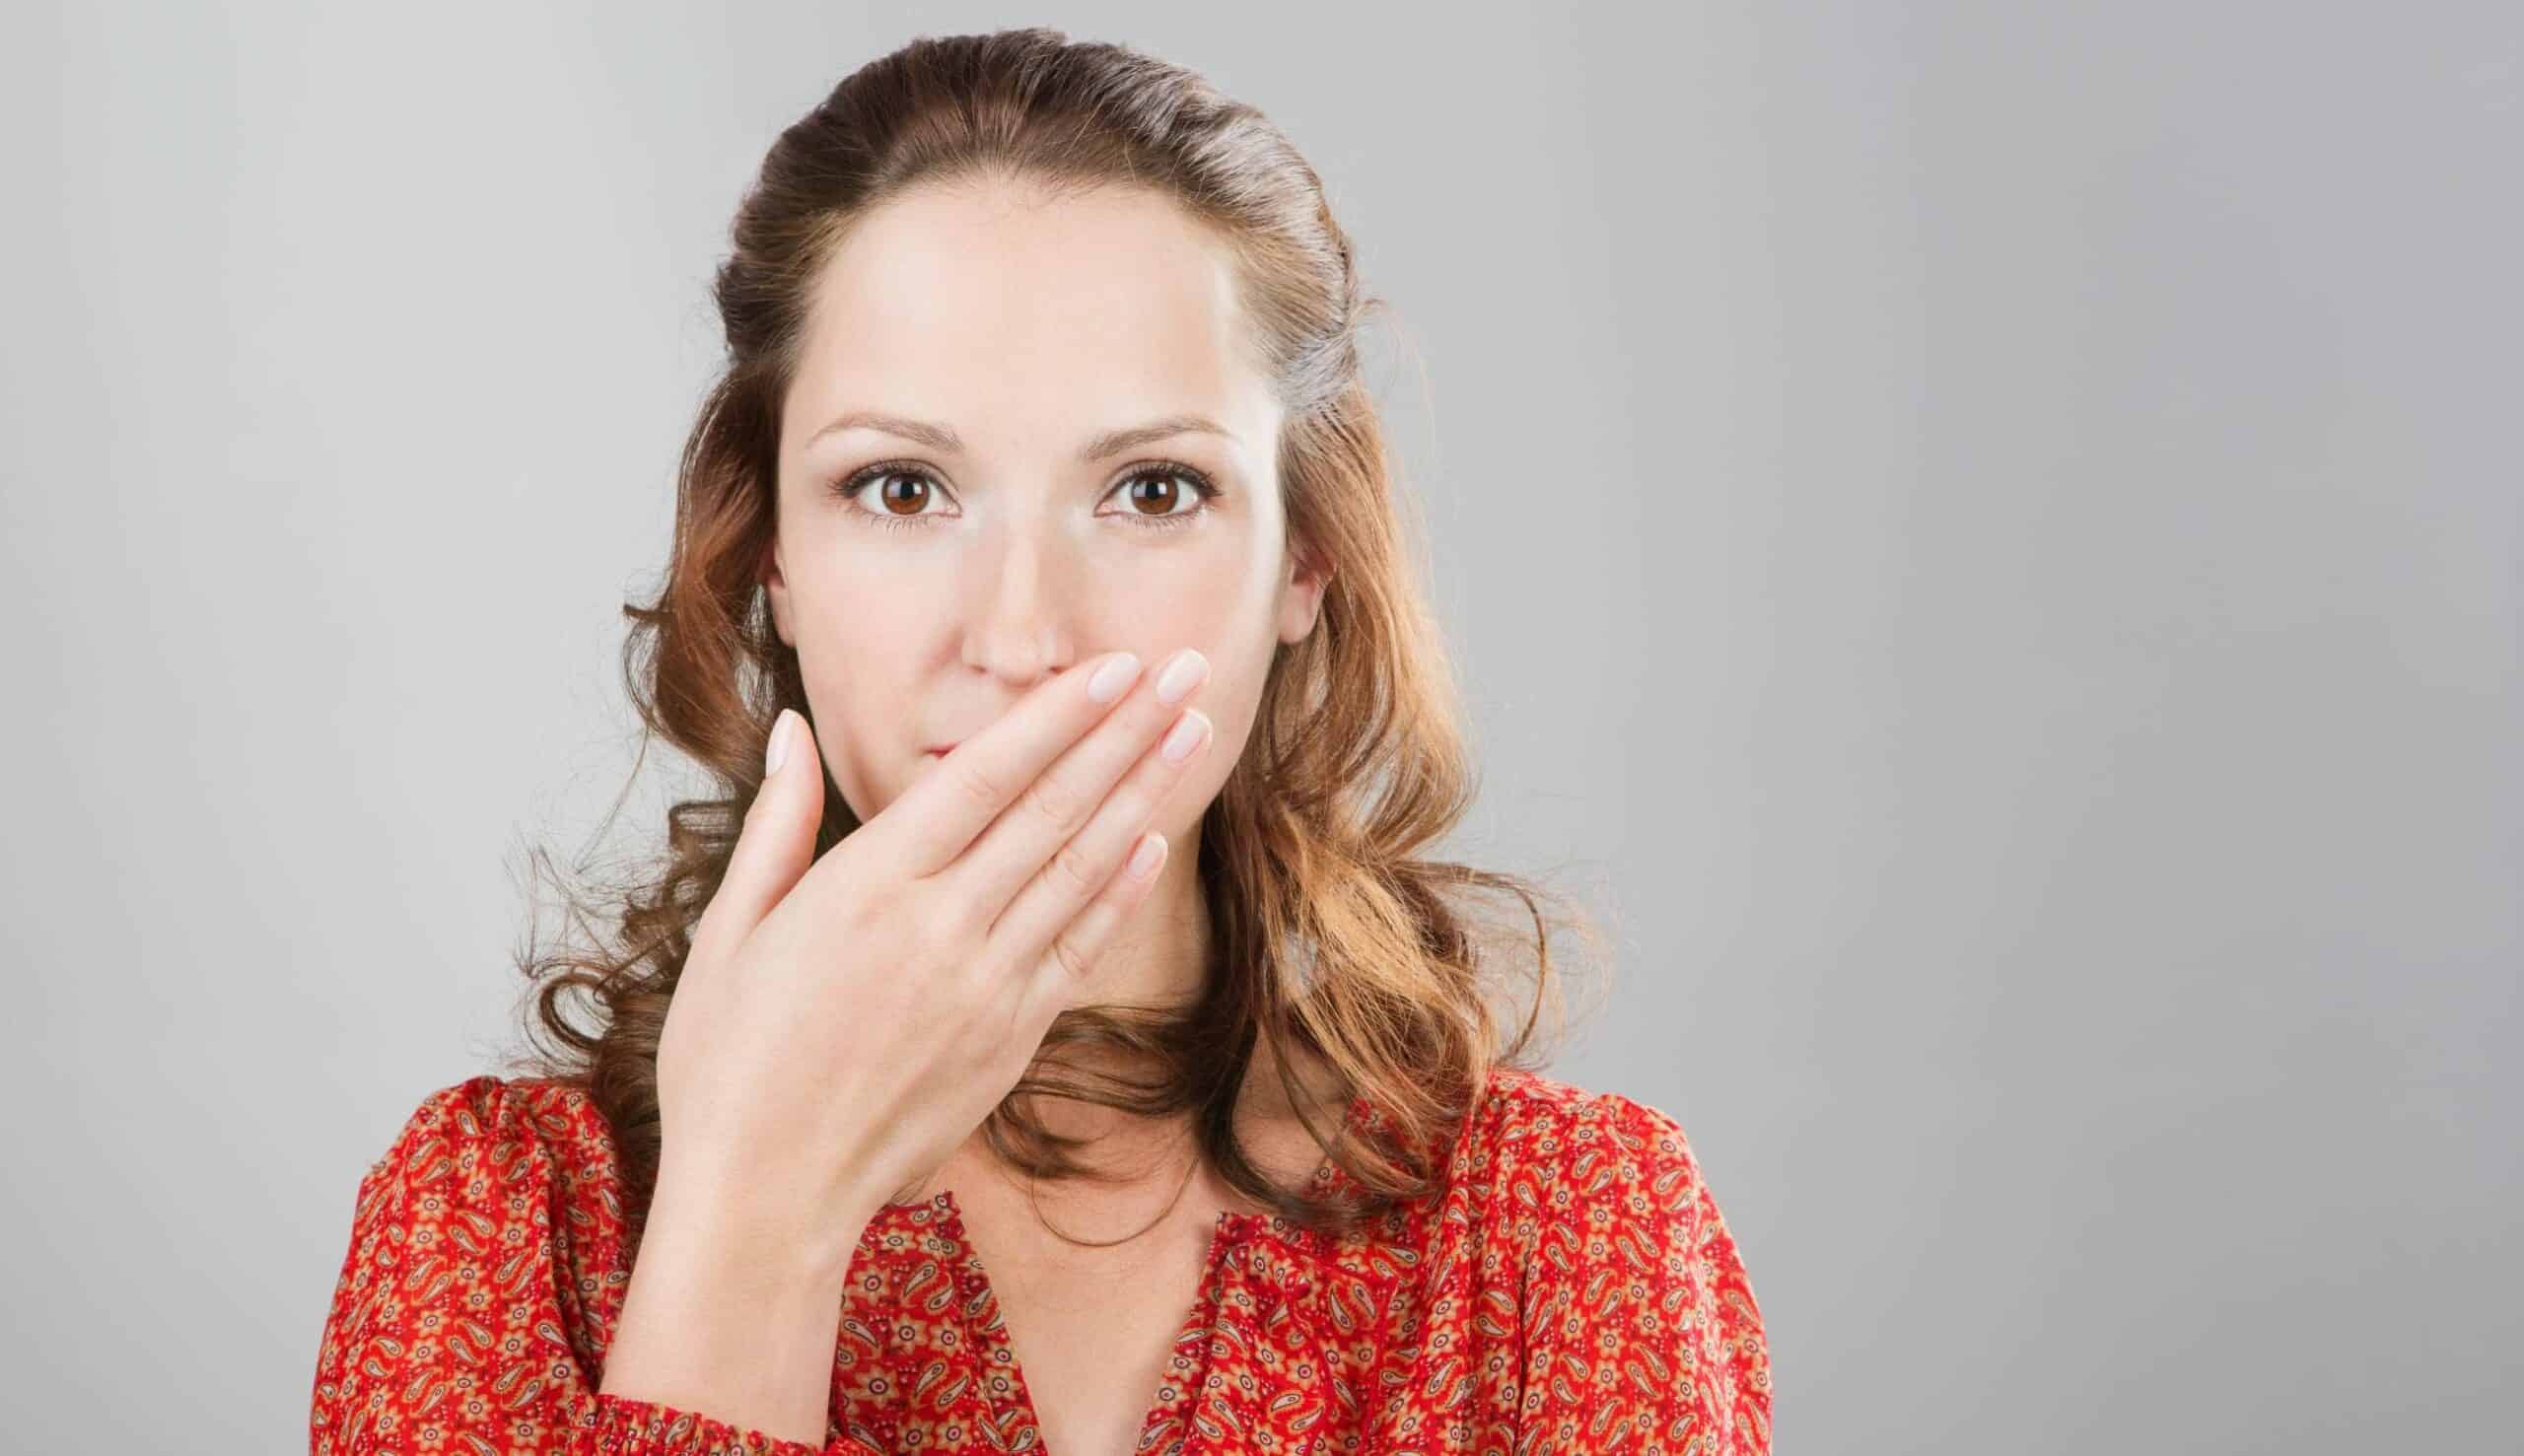 Comment soigner une mauvaise haleine chronique ? | Clinique dentaire Sana Oris | Paris 8